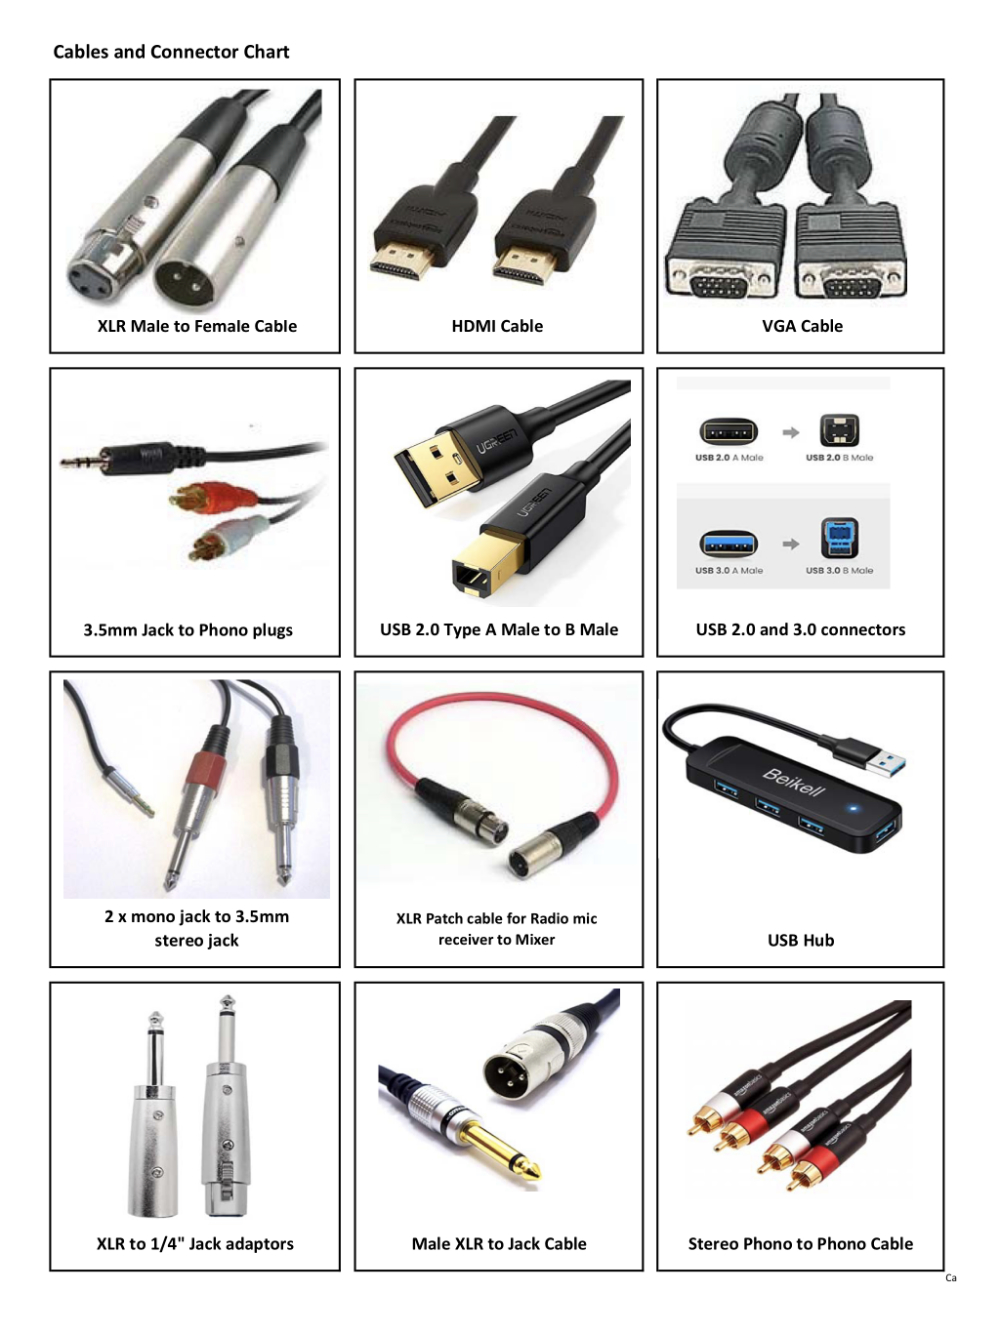 Cables & Connectors Chart